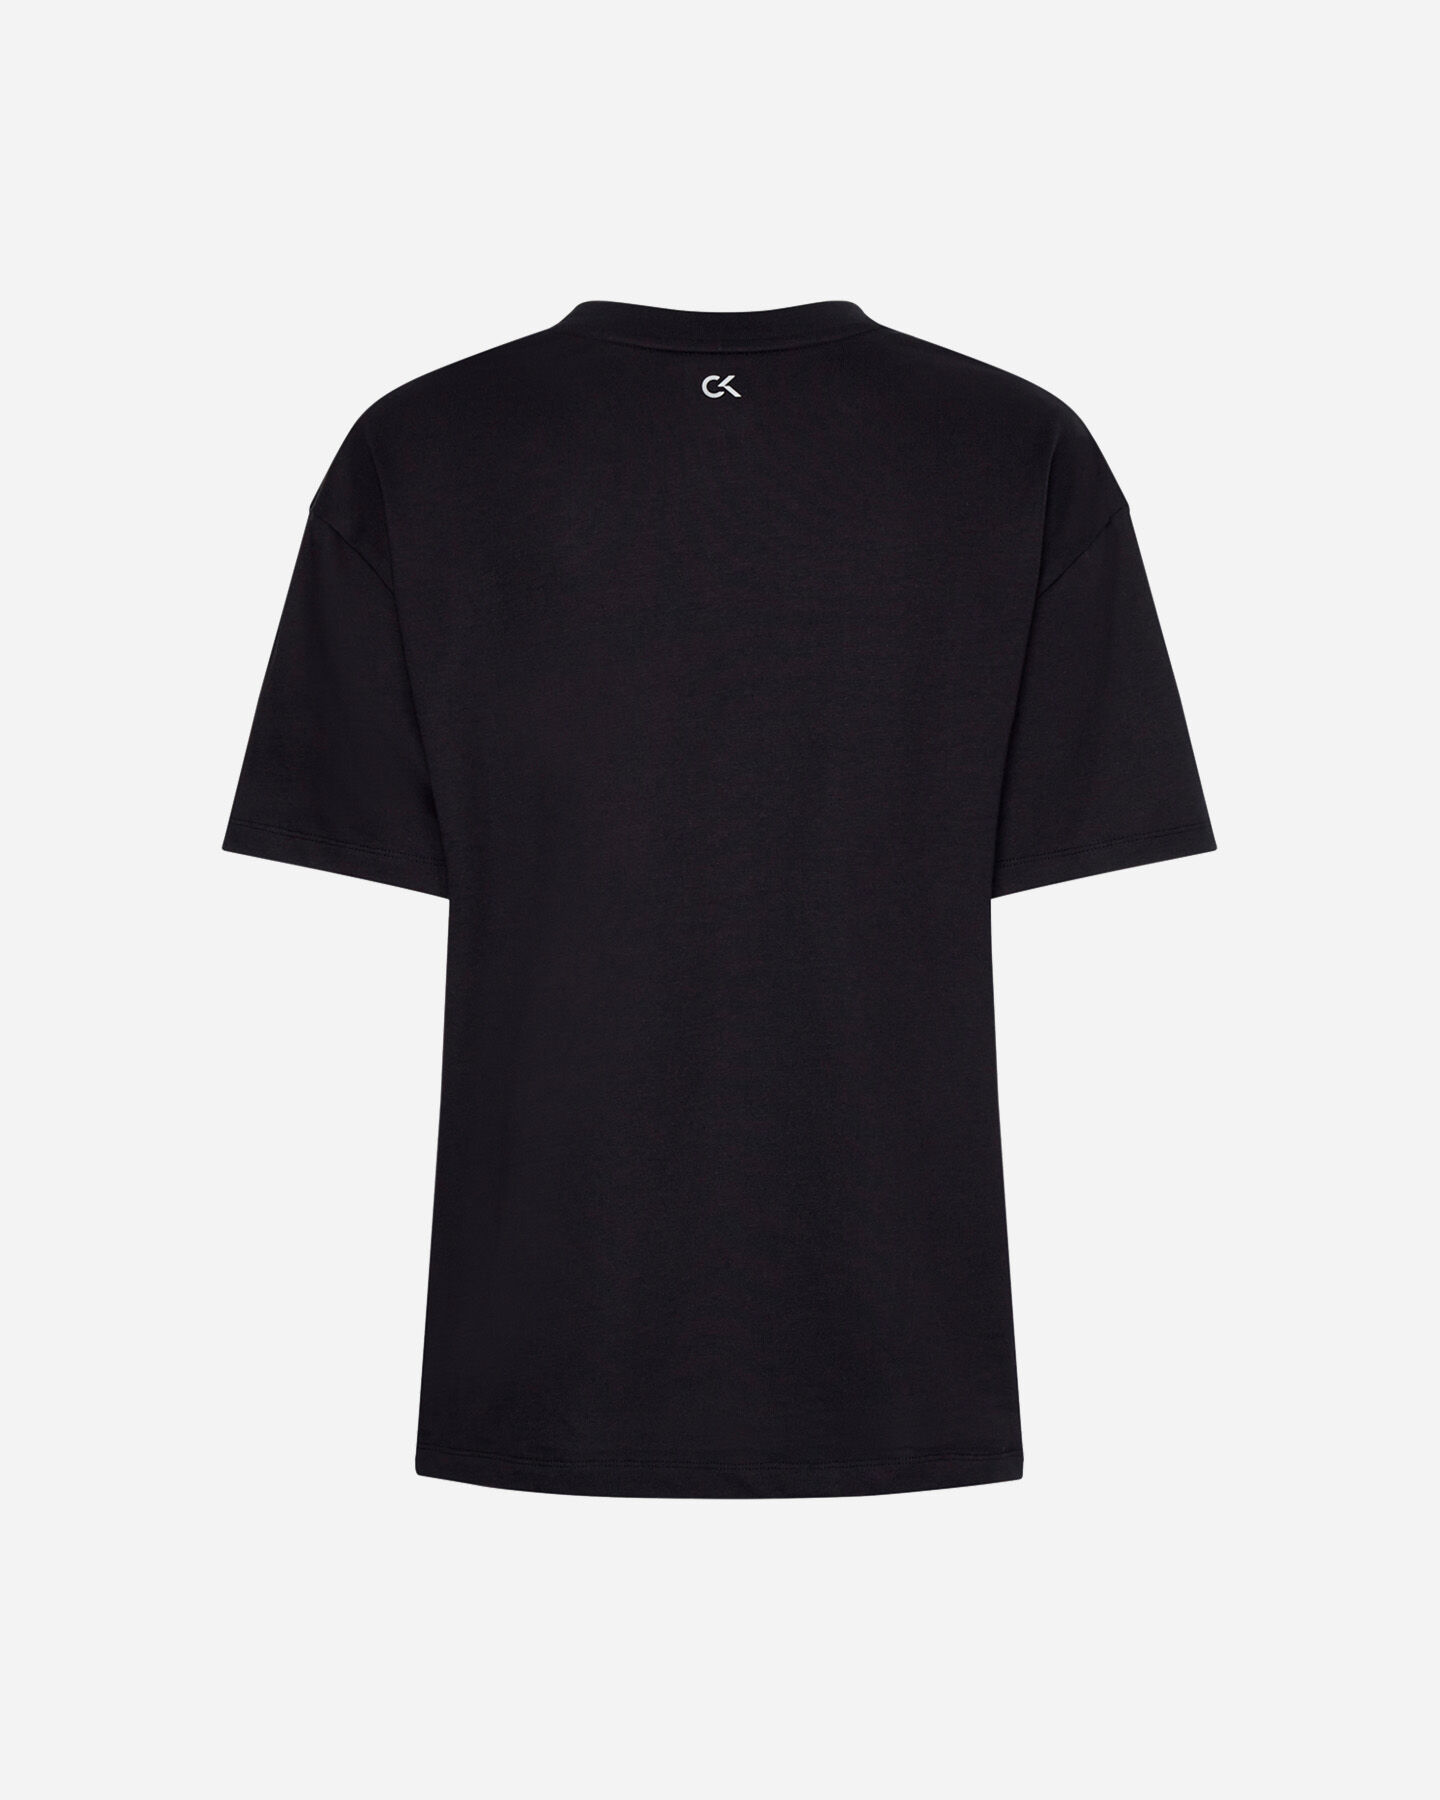  T-Shirt CALVIN KLEIN SPORT BIG LOGO W S4094659|001|XS scatto 1